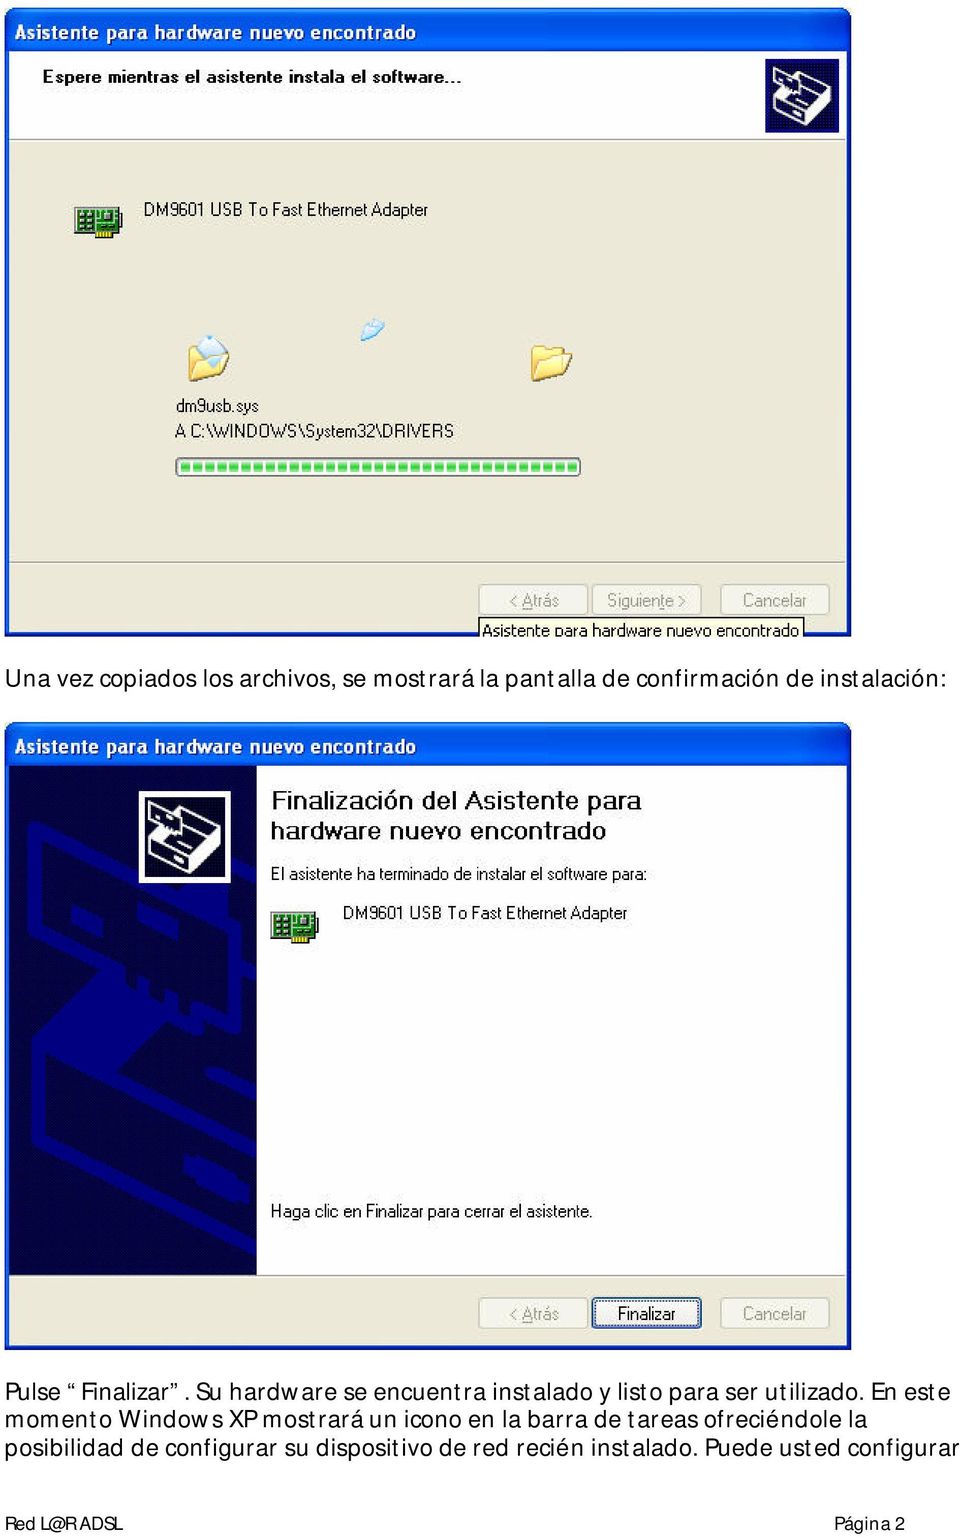 En este momento Windows XP mostrará un icono en la barra de tareas ofreciéndole la